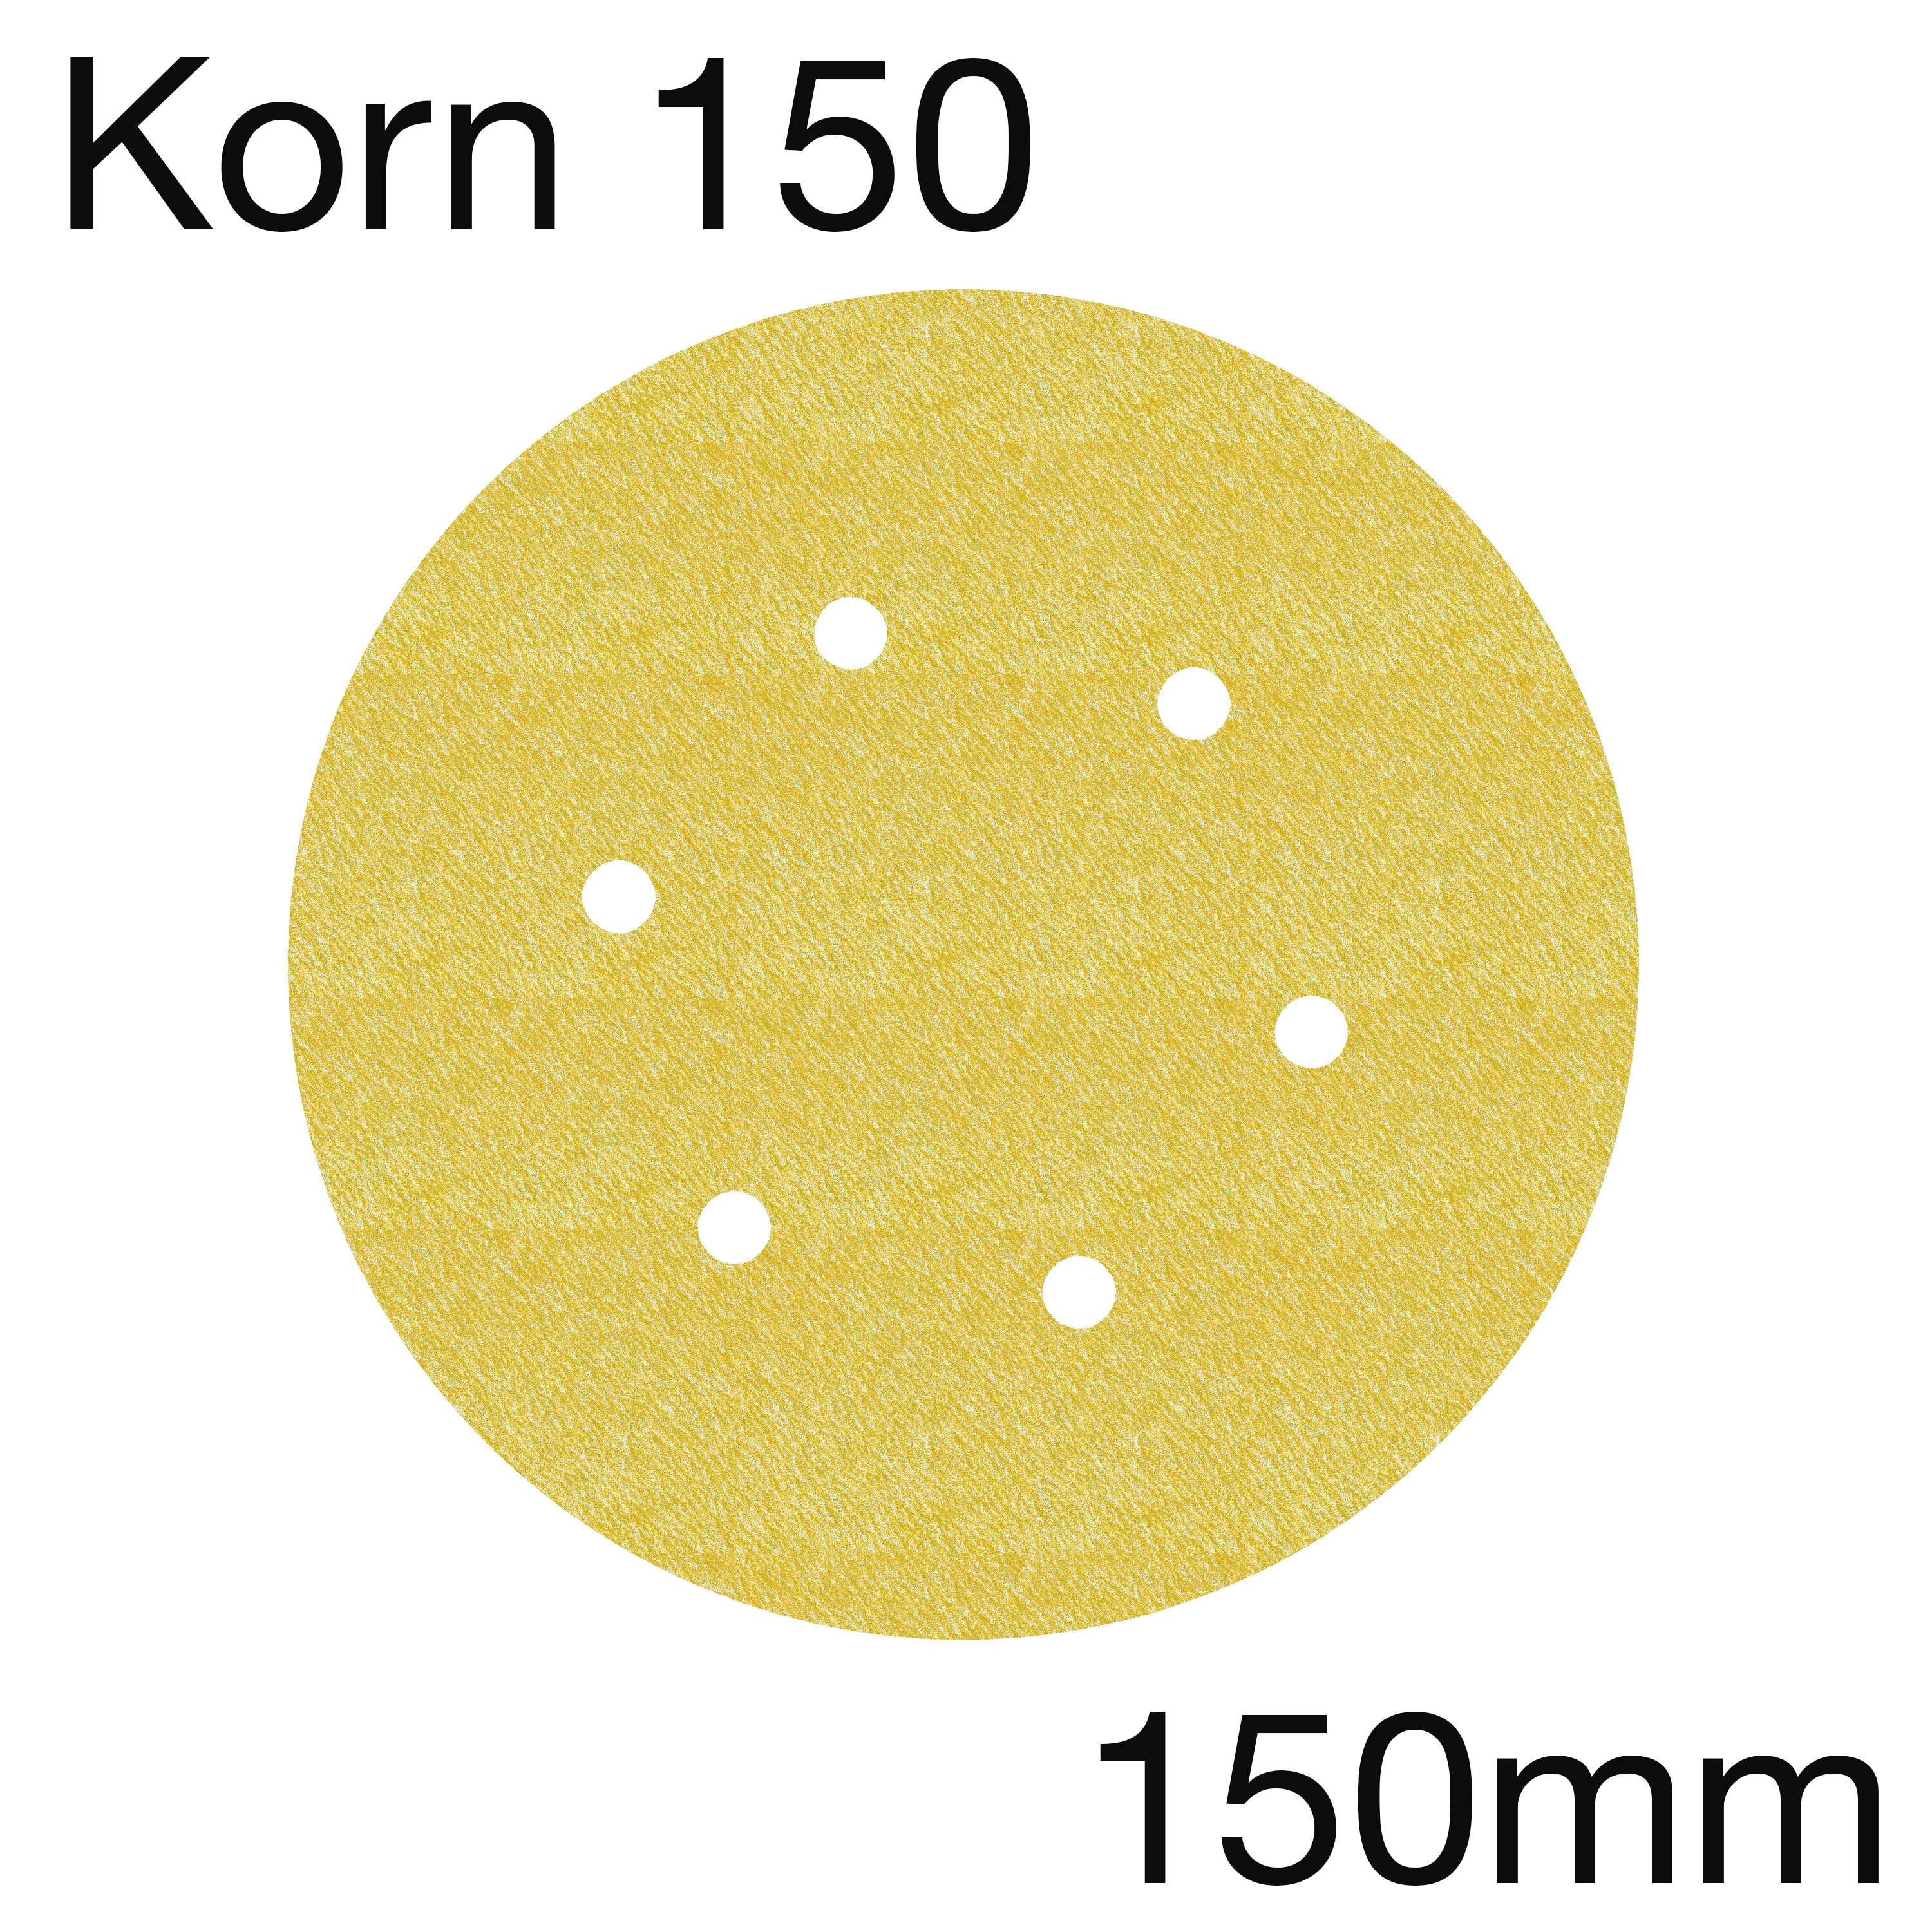 3M 255 63332 Hookit Papierschleifscheibe Gold, 6-Loch, Korn 150, 150mm, Pack mit 100 Stk